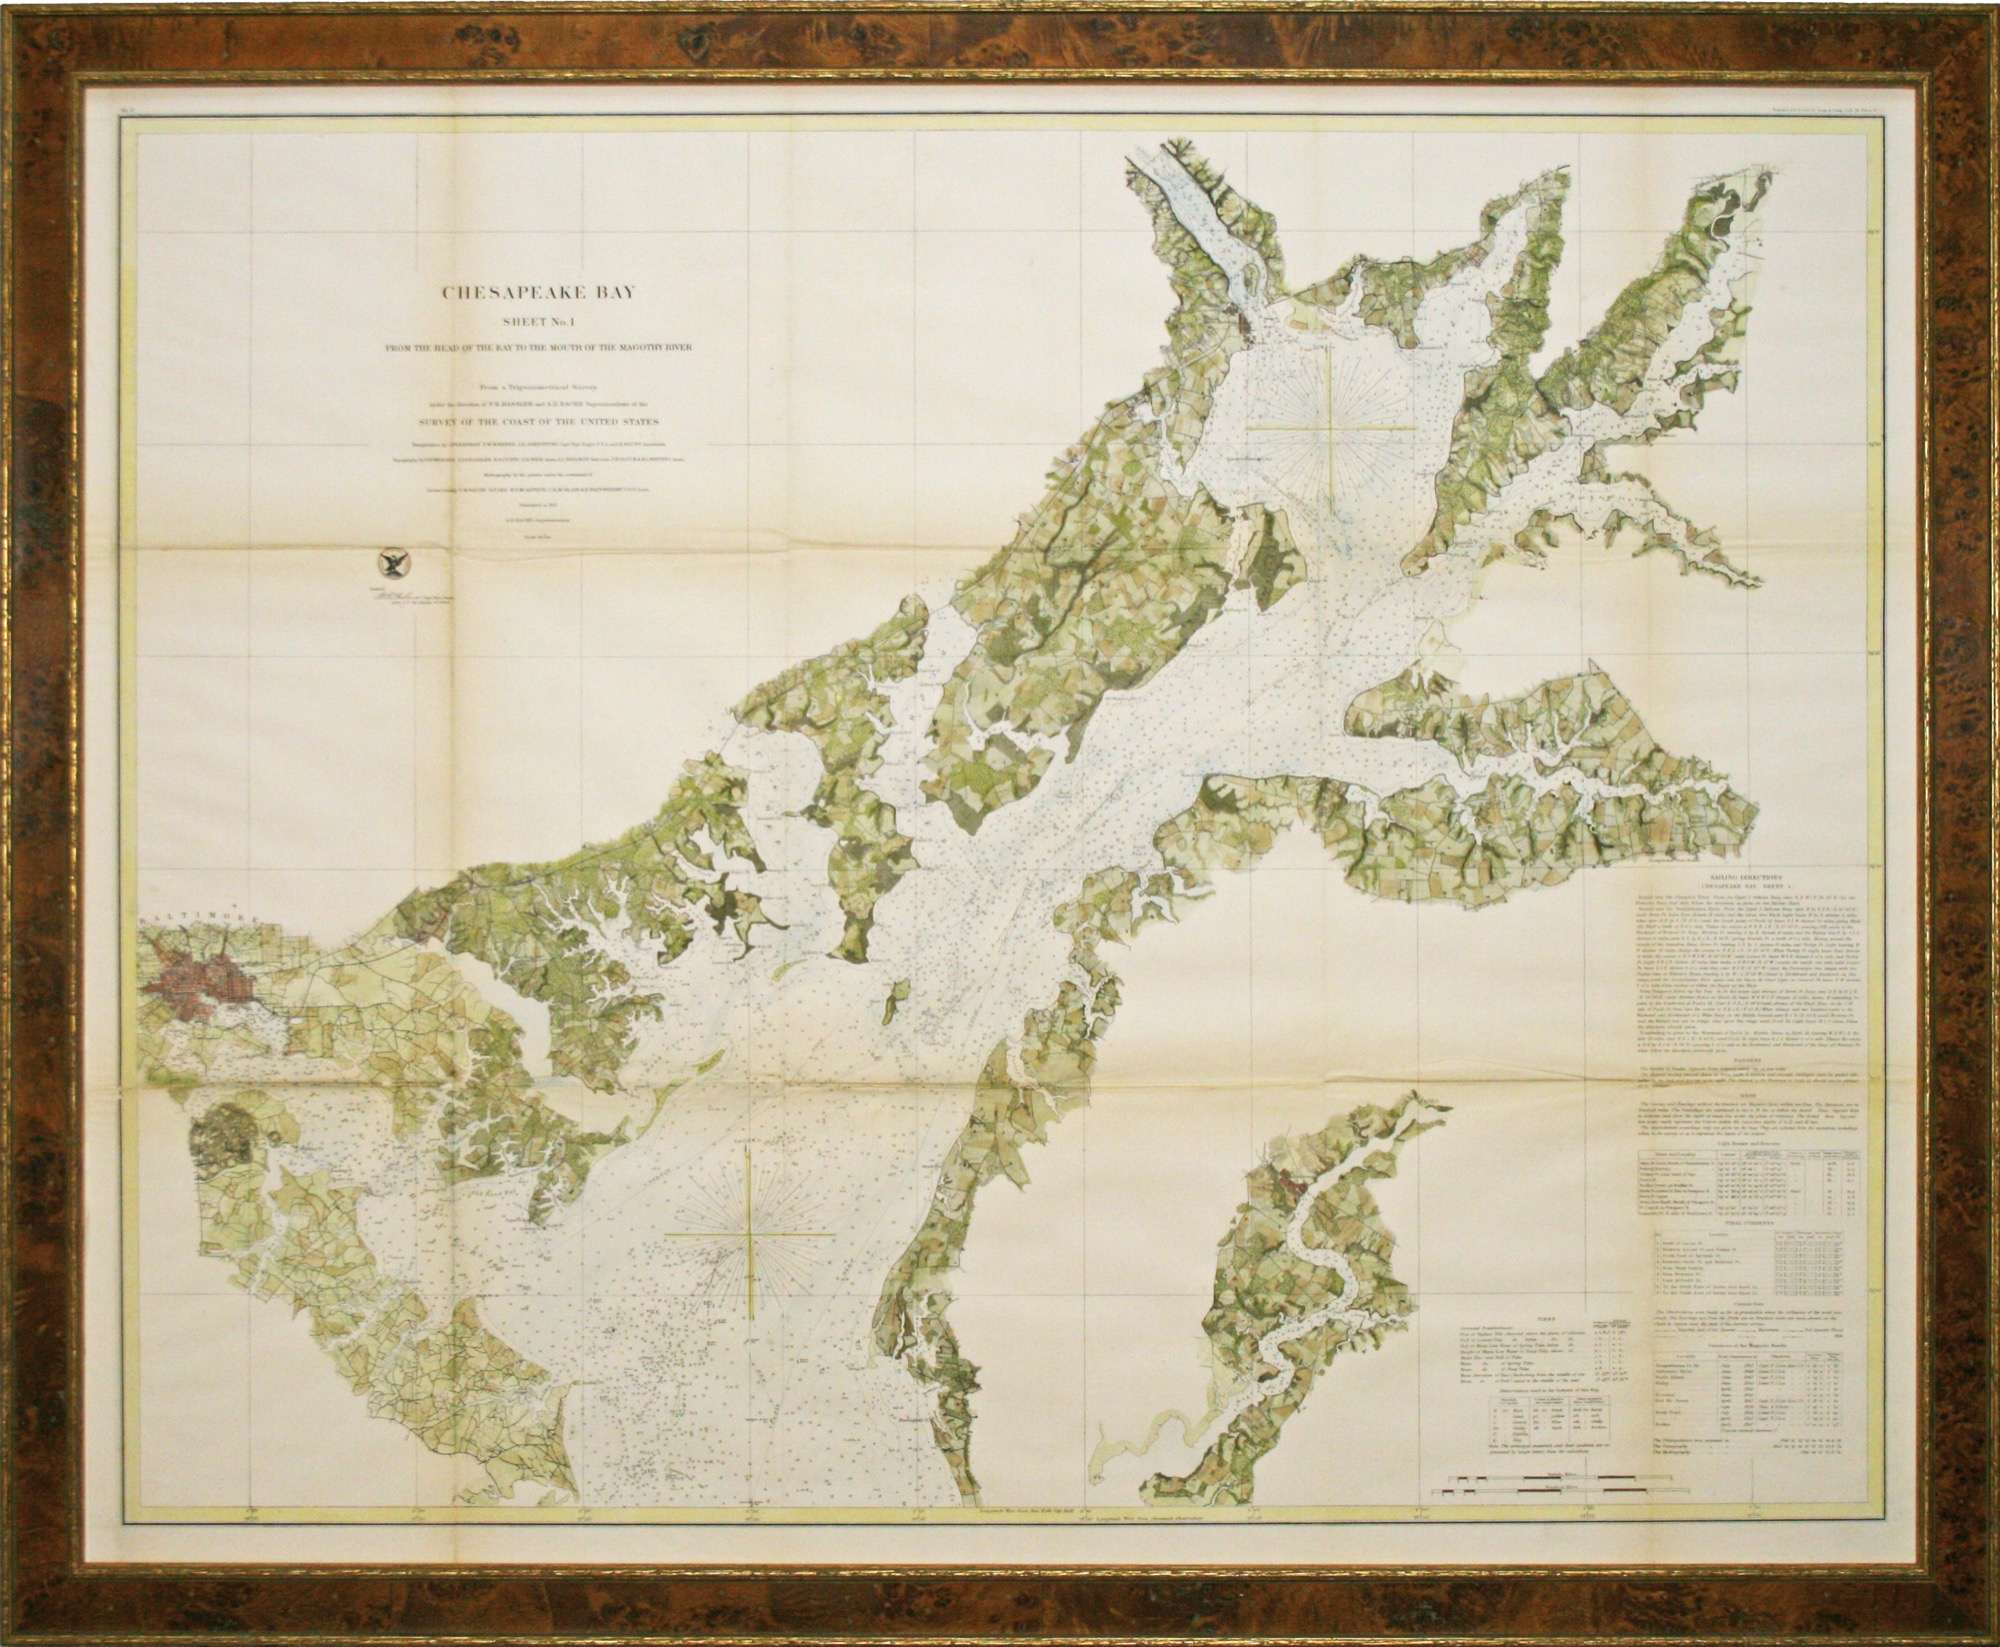 Chesapeake Bay Sheet No. 1 1857